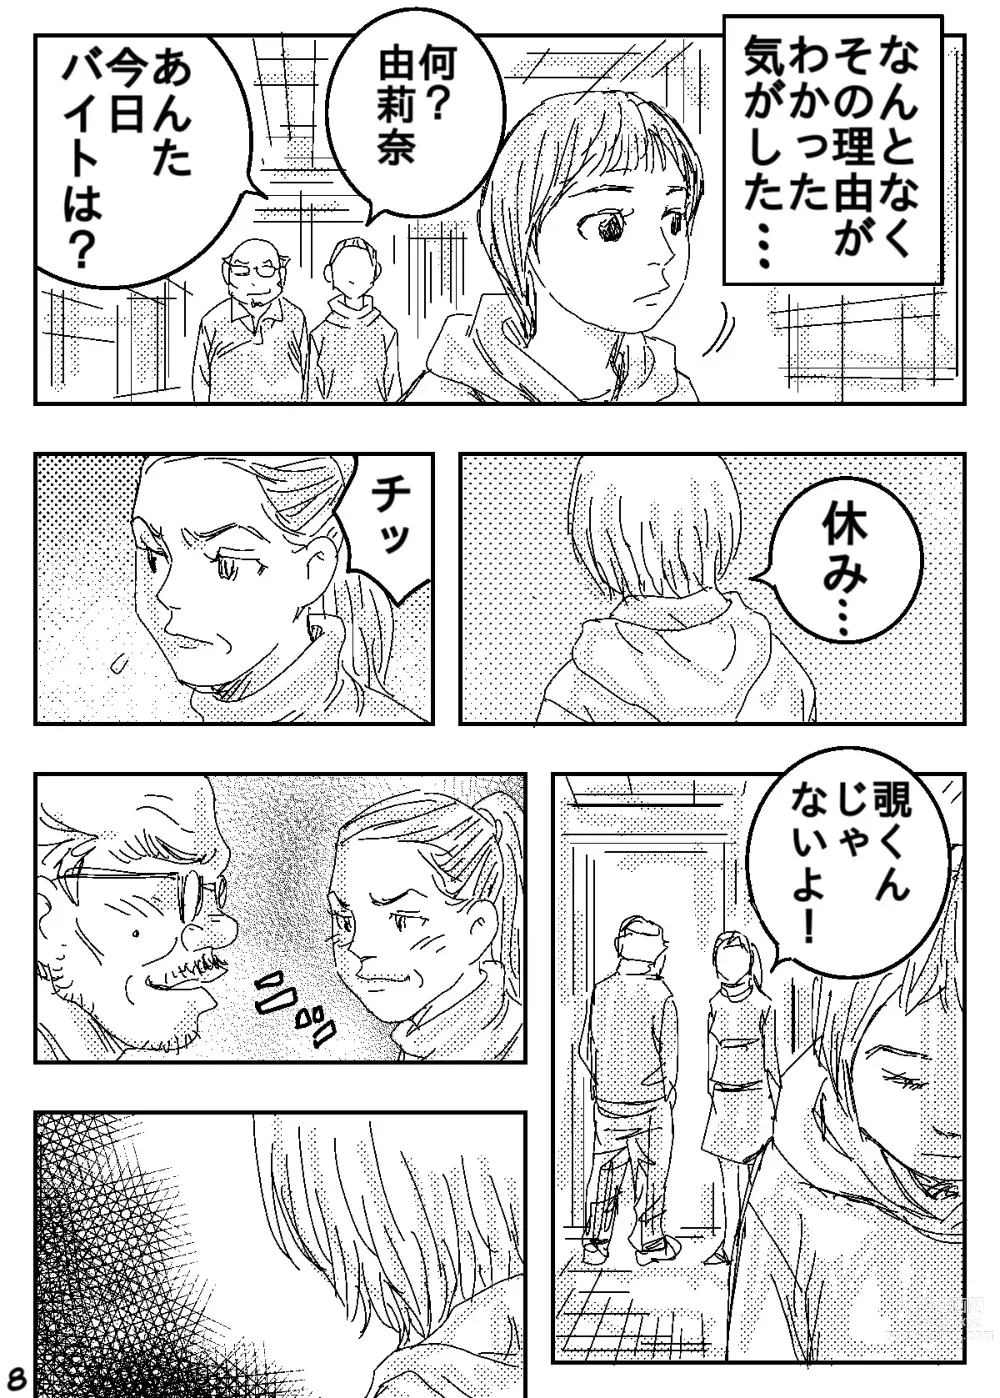 Page 8 of doujinshi Gesu no Kiwami Kazoku